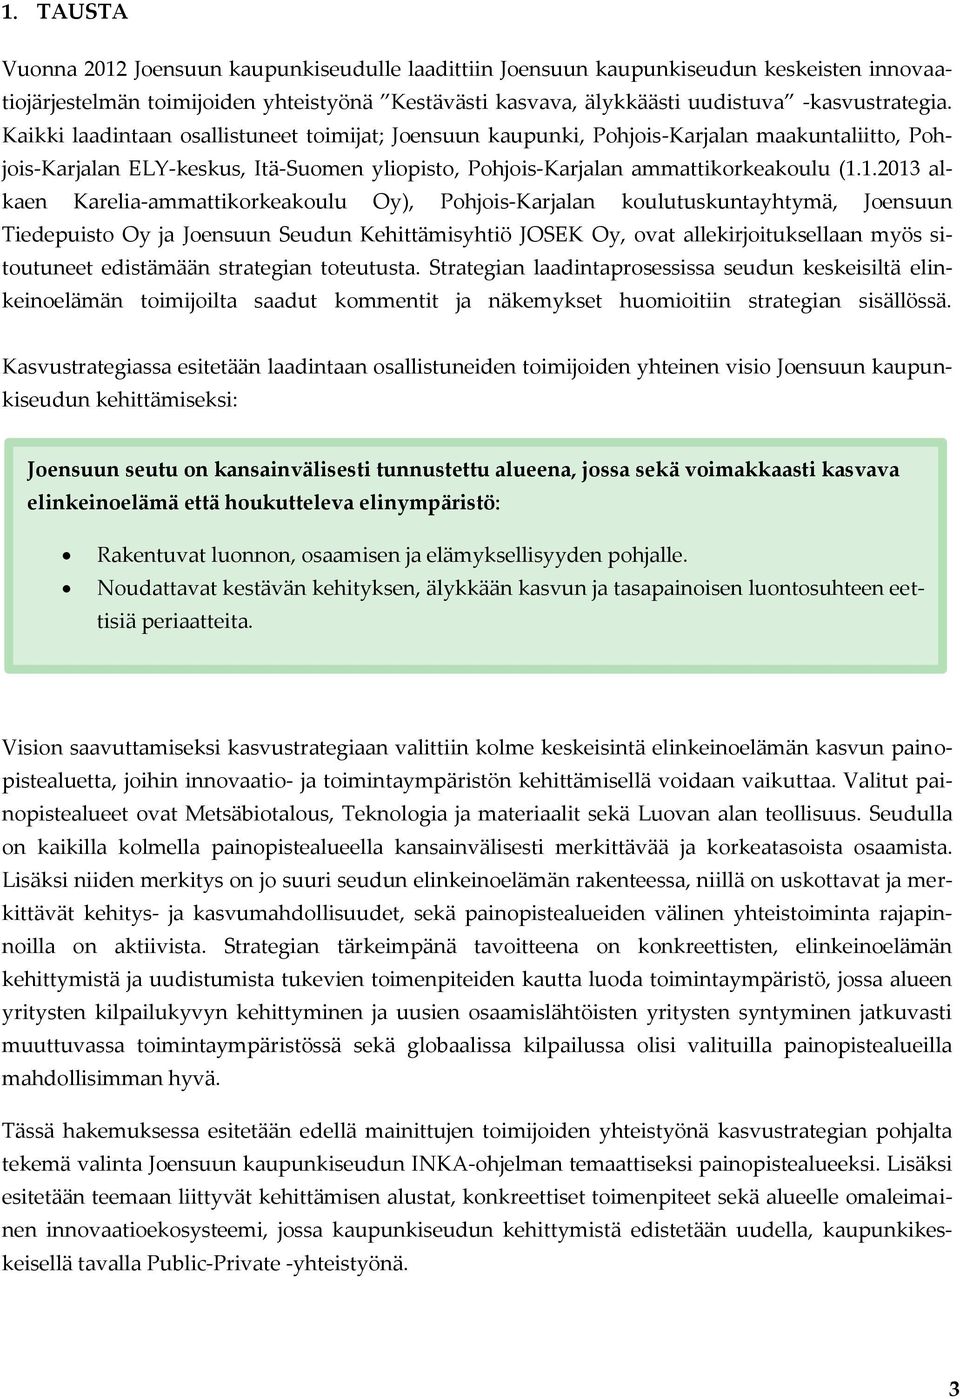 1.2013 alkaen Karelia-ammattikorkeakoulu Oy), Pohjois-Karjalan koulutuskuntayhtymä, Joensuun Tiedepuisto Oy ja Joensuun Seudun Kehittämisyhtiö JOSEK Oy, ovat allekirjoituksellaan myös sitoutuneet